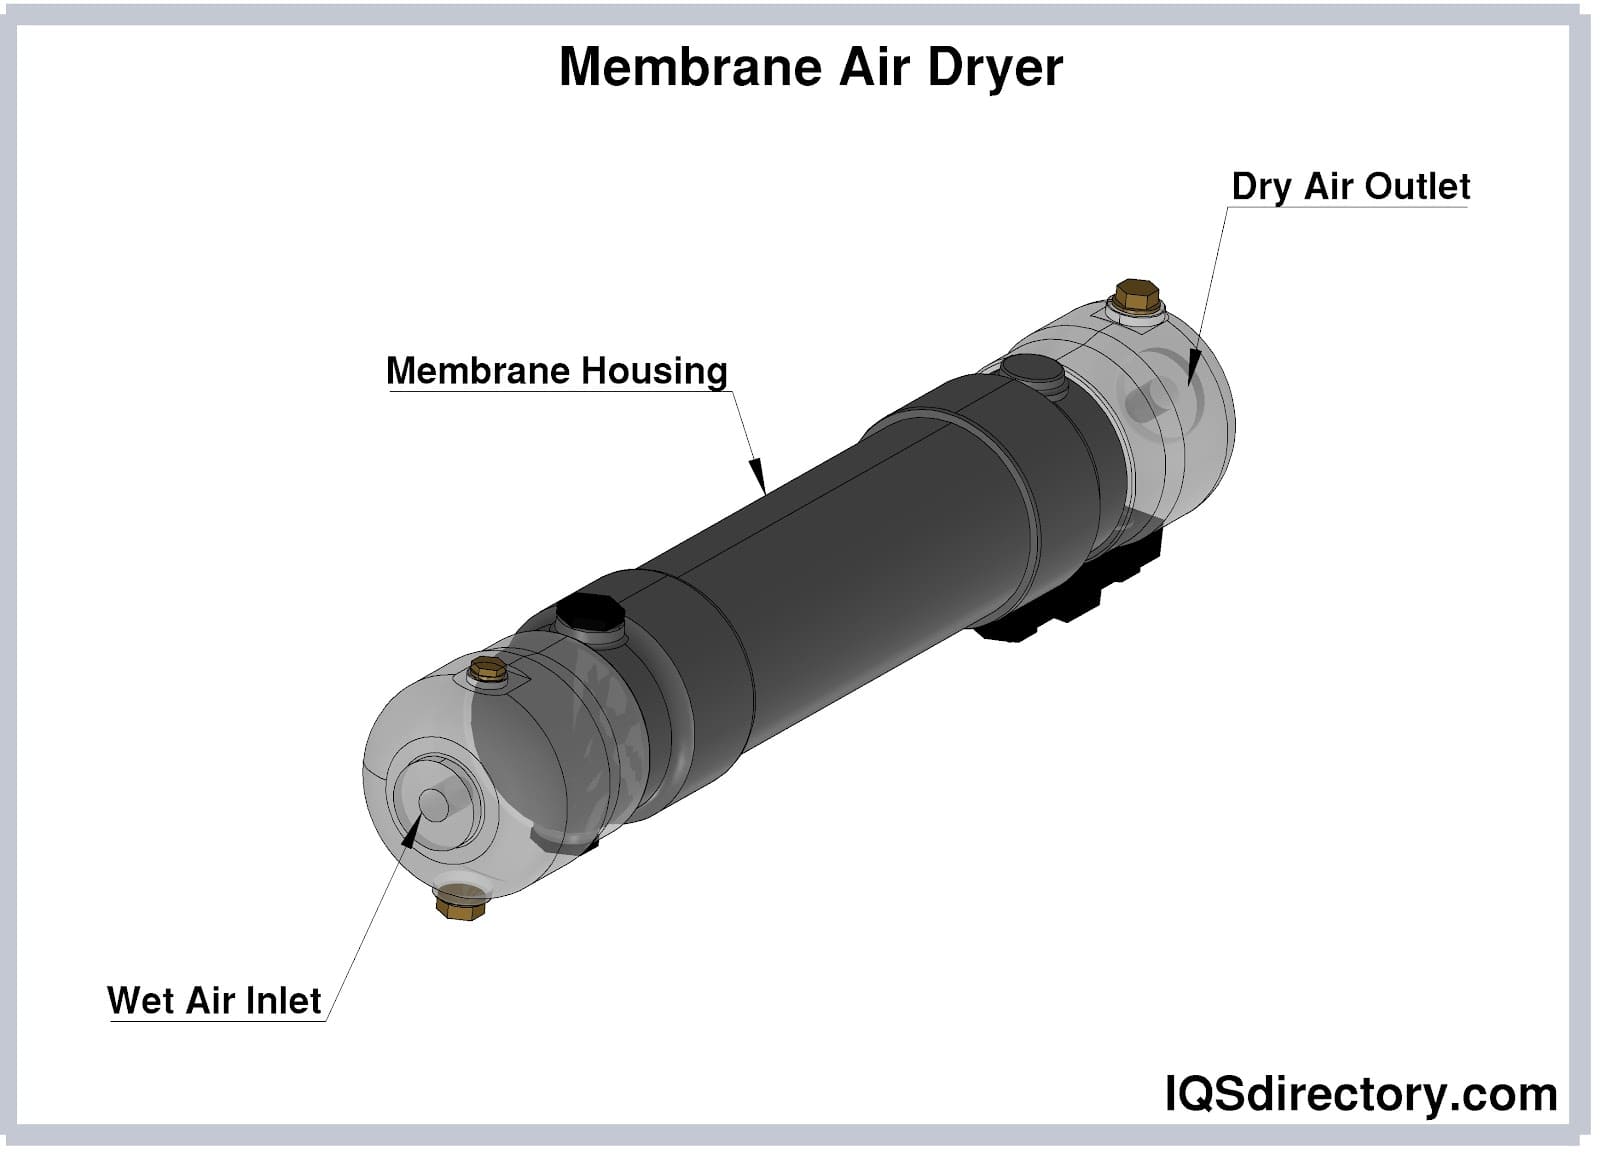 Membrane Air Dryer